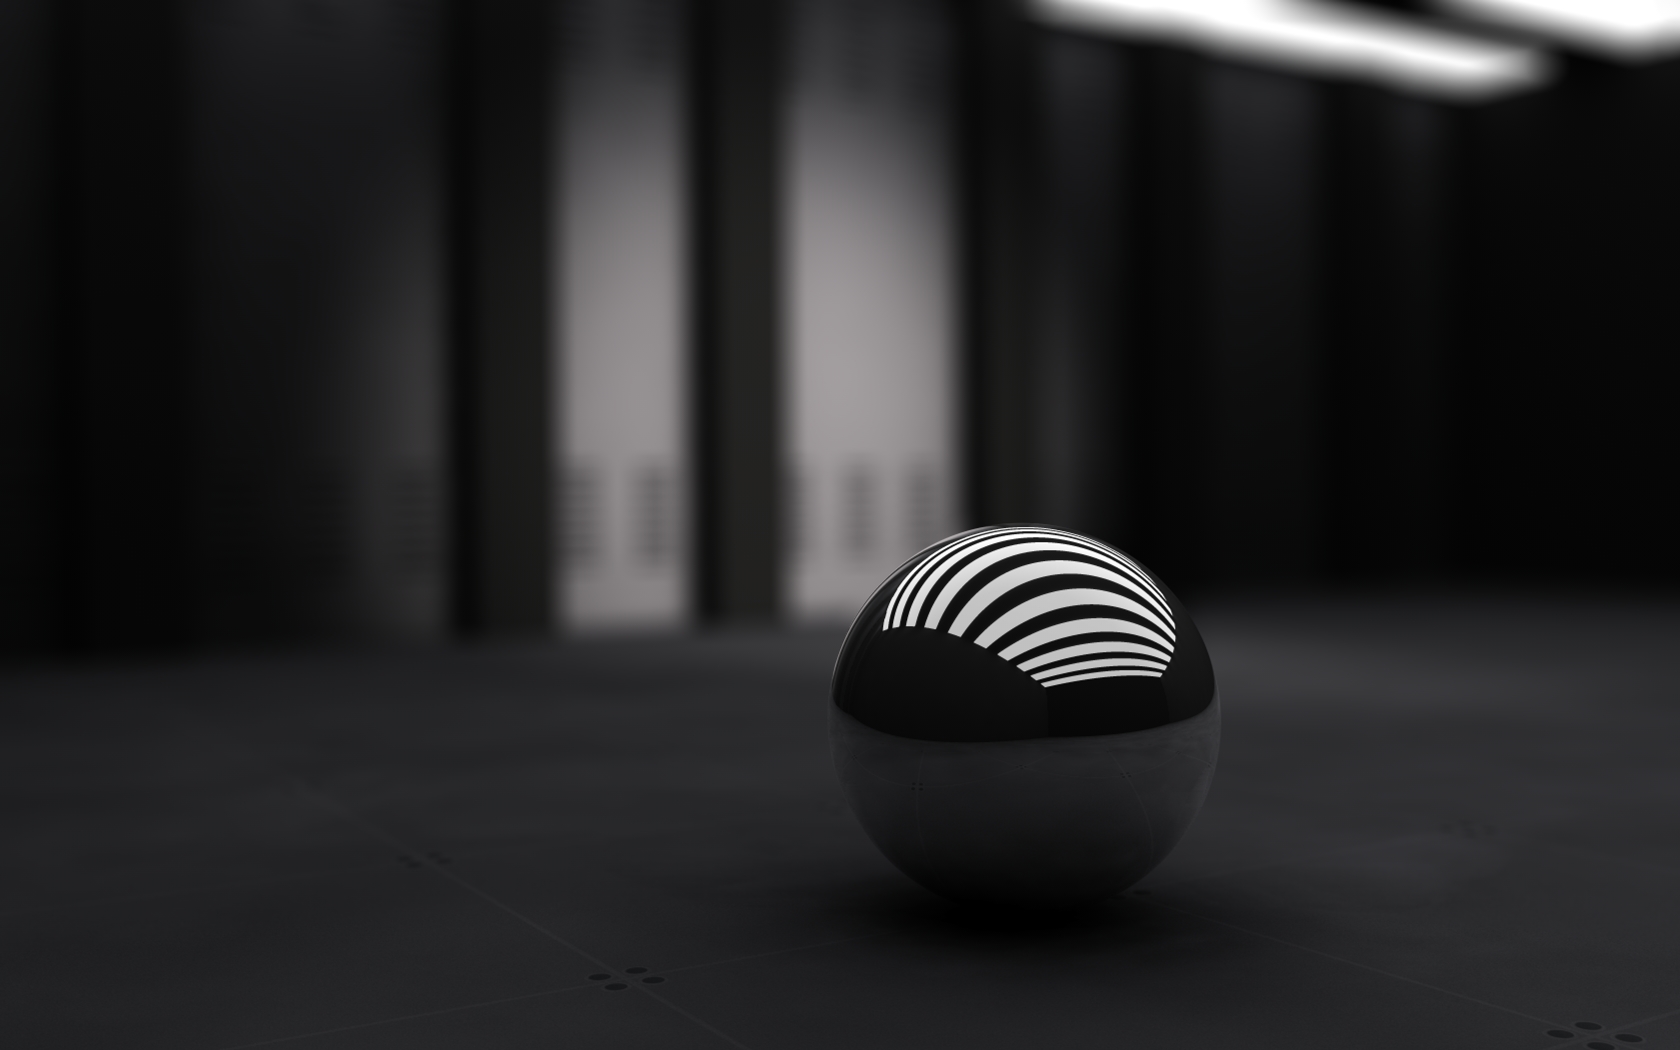 3D Black Ball307187471 - 3D Black Ball - Black, Ball